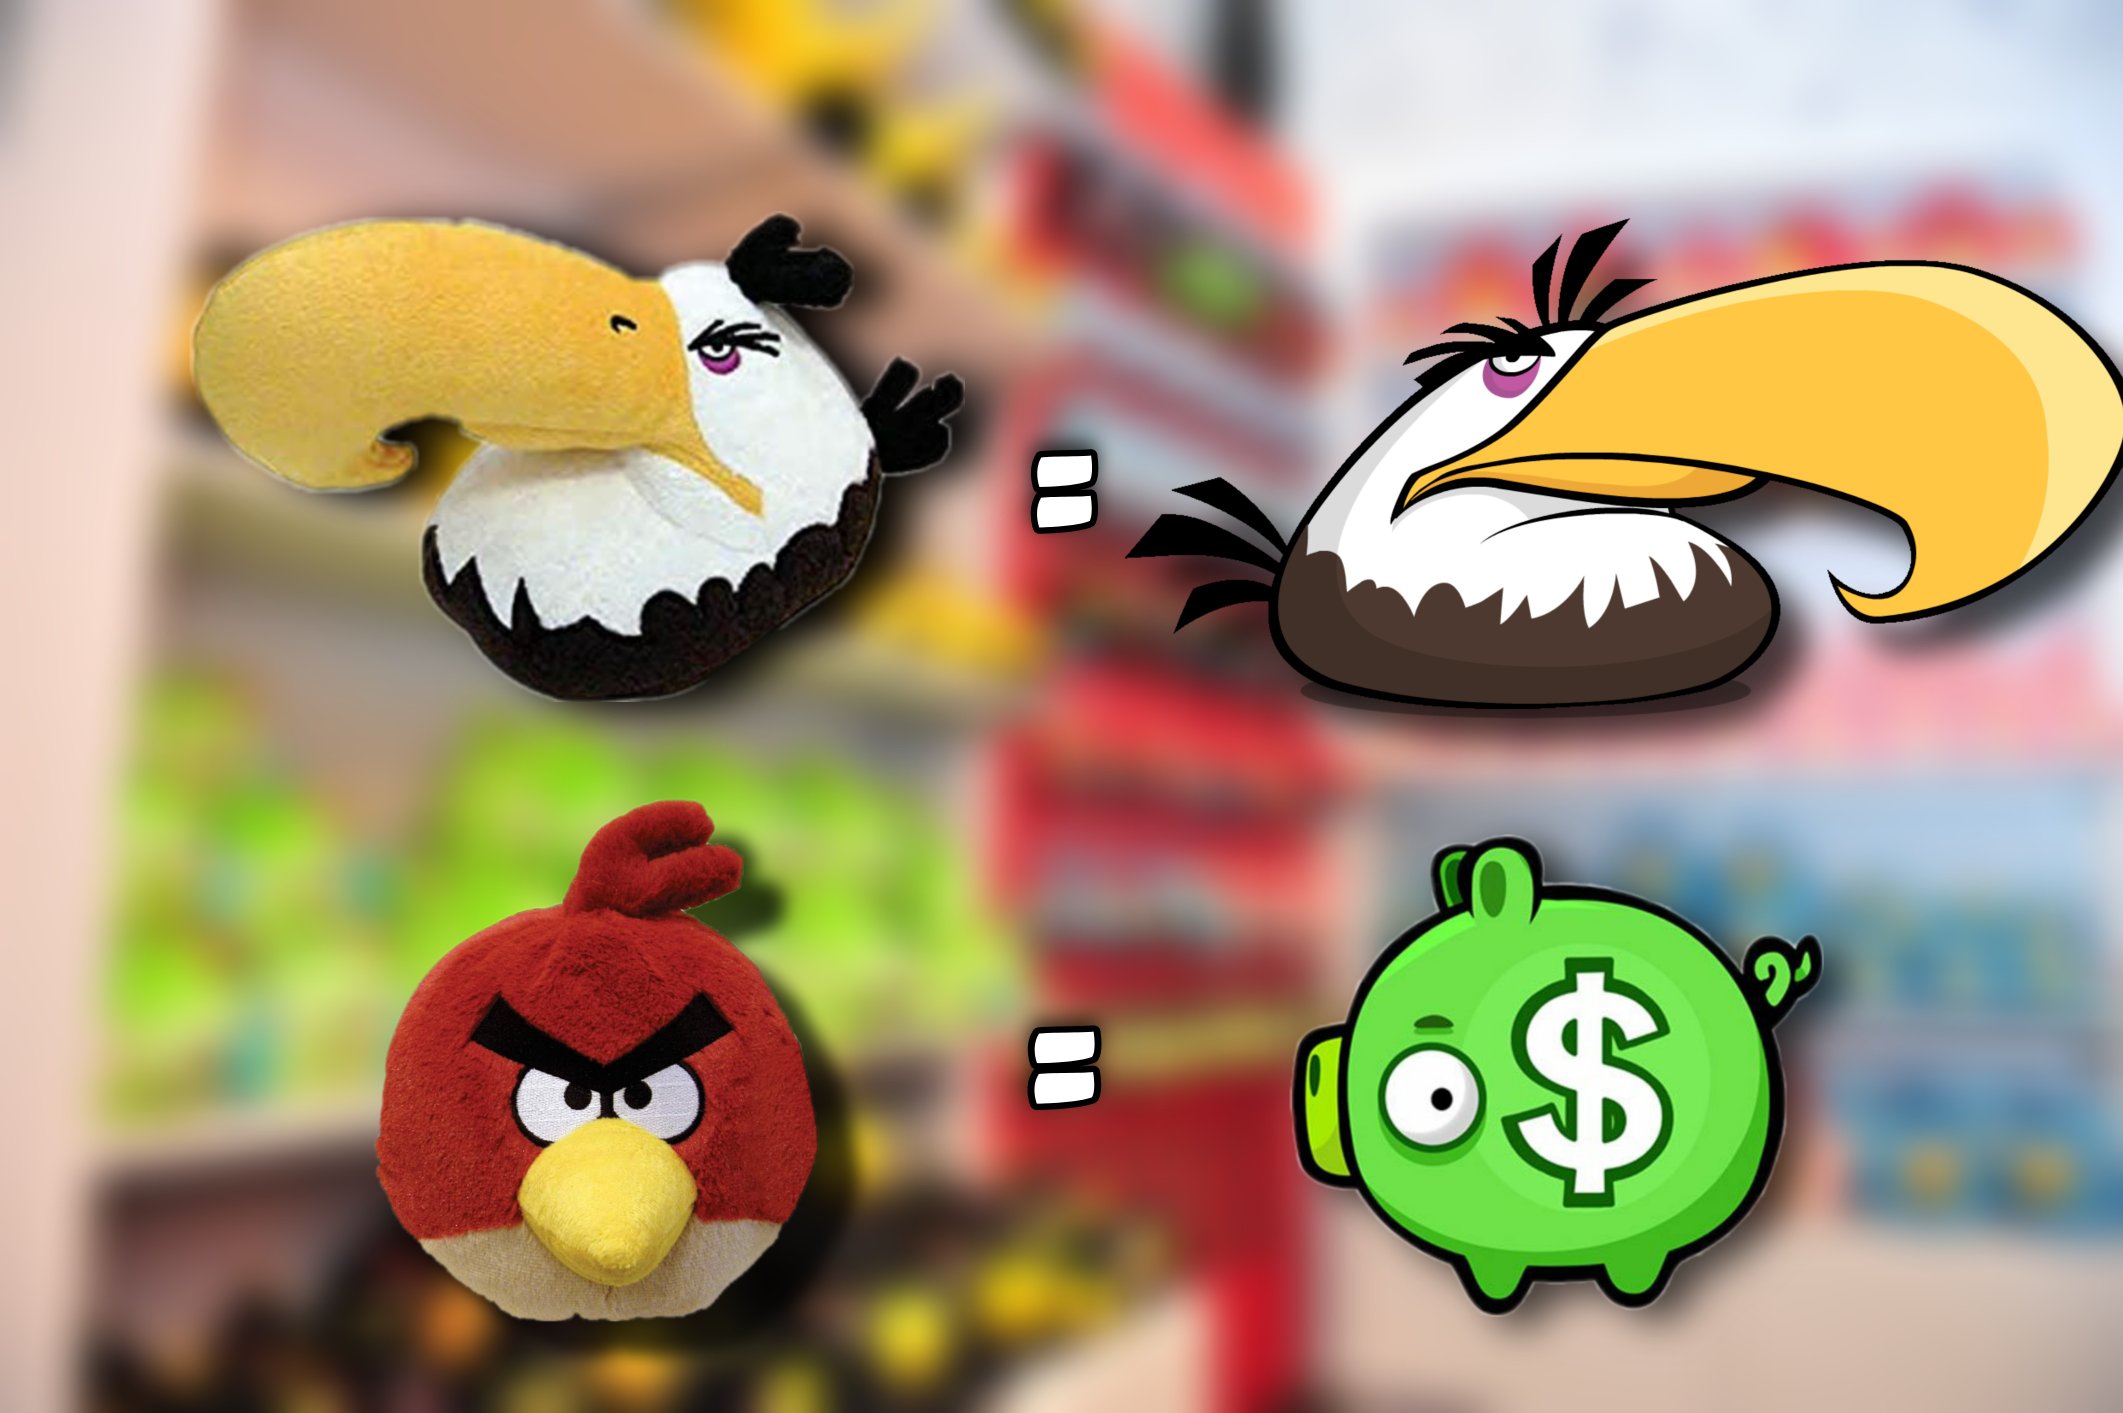 Angry birds eagle. Майти ангри Бердс. Angry Birds Mighty Eagle. Могучий Орел. Angry Birds Mighty Eagle Plush.